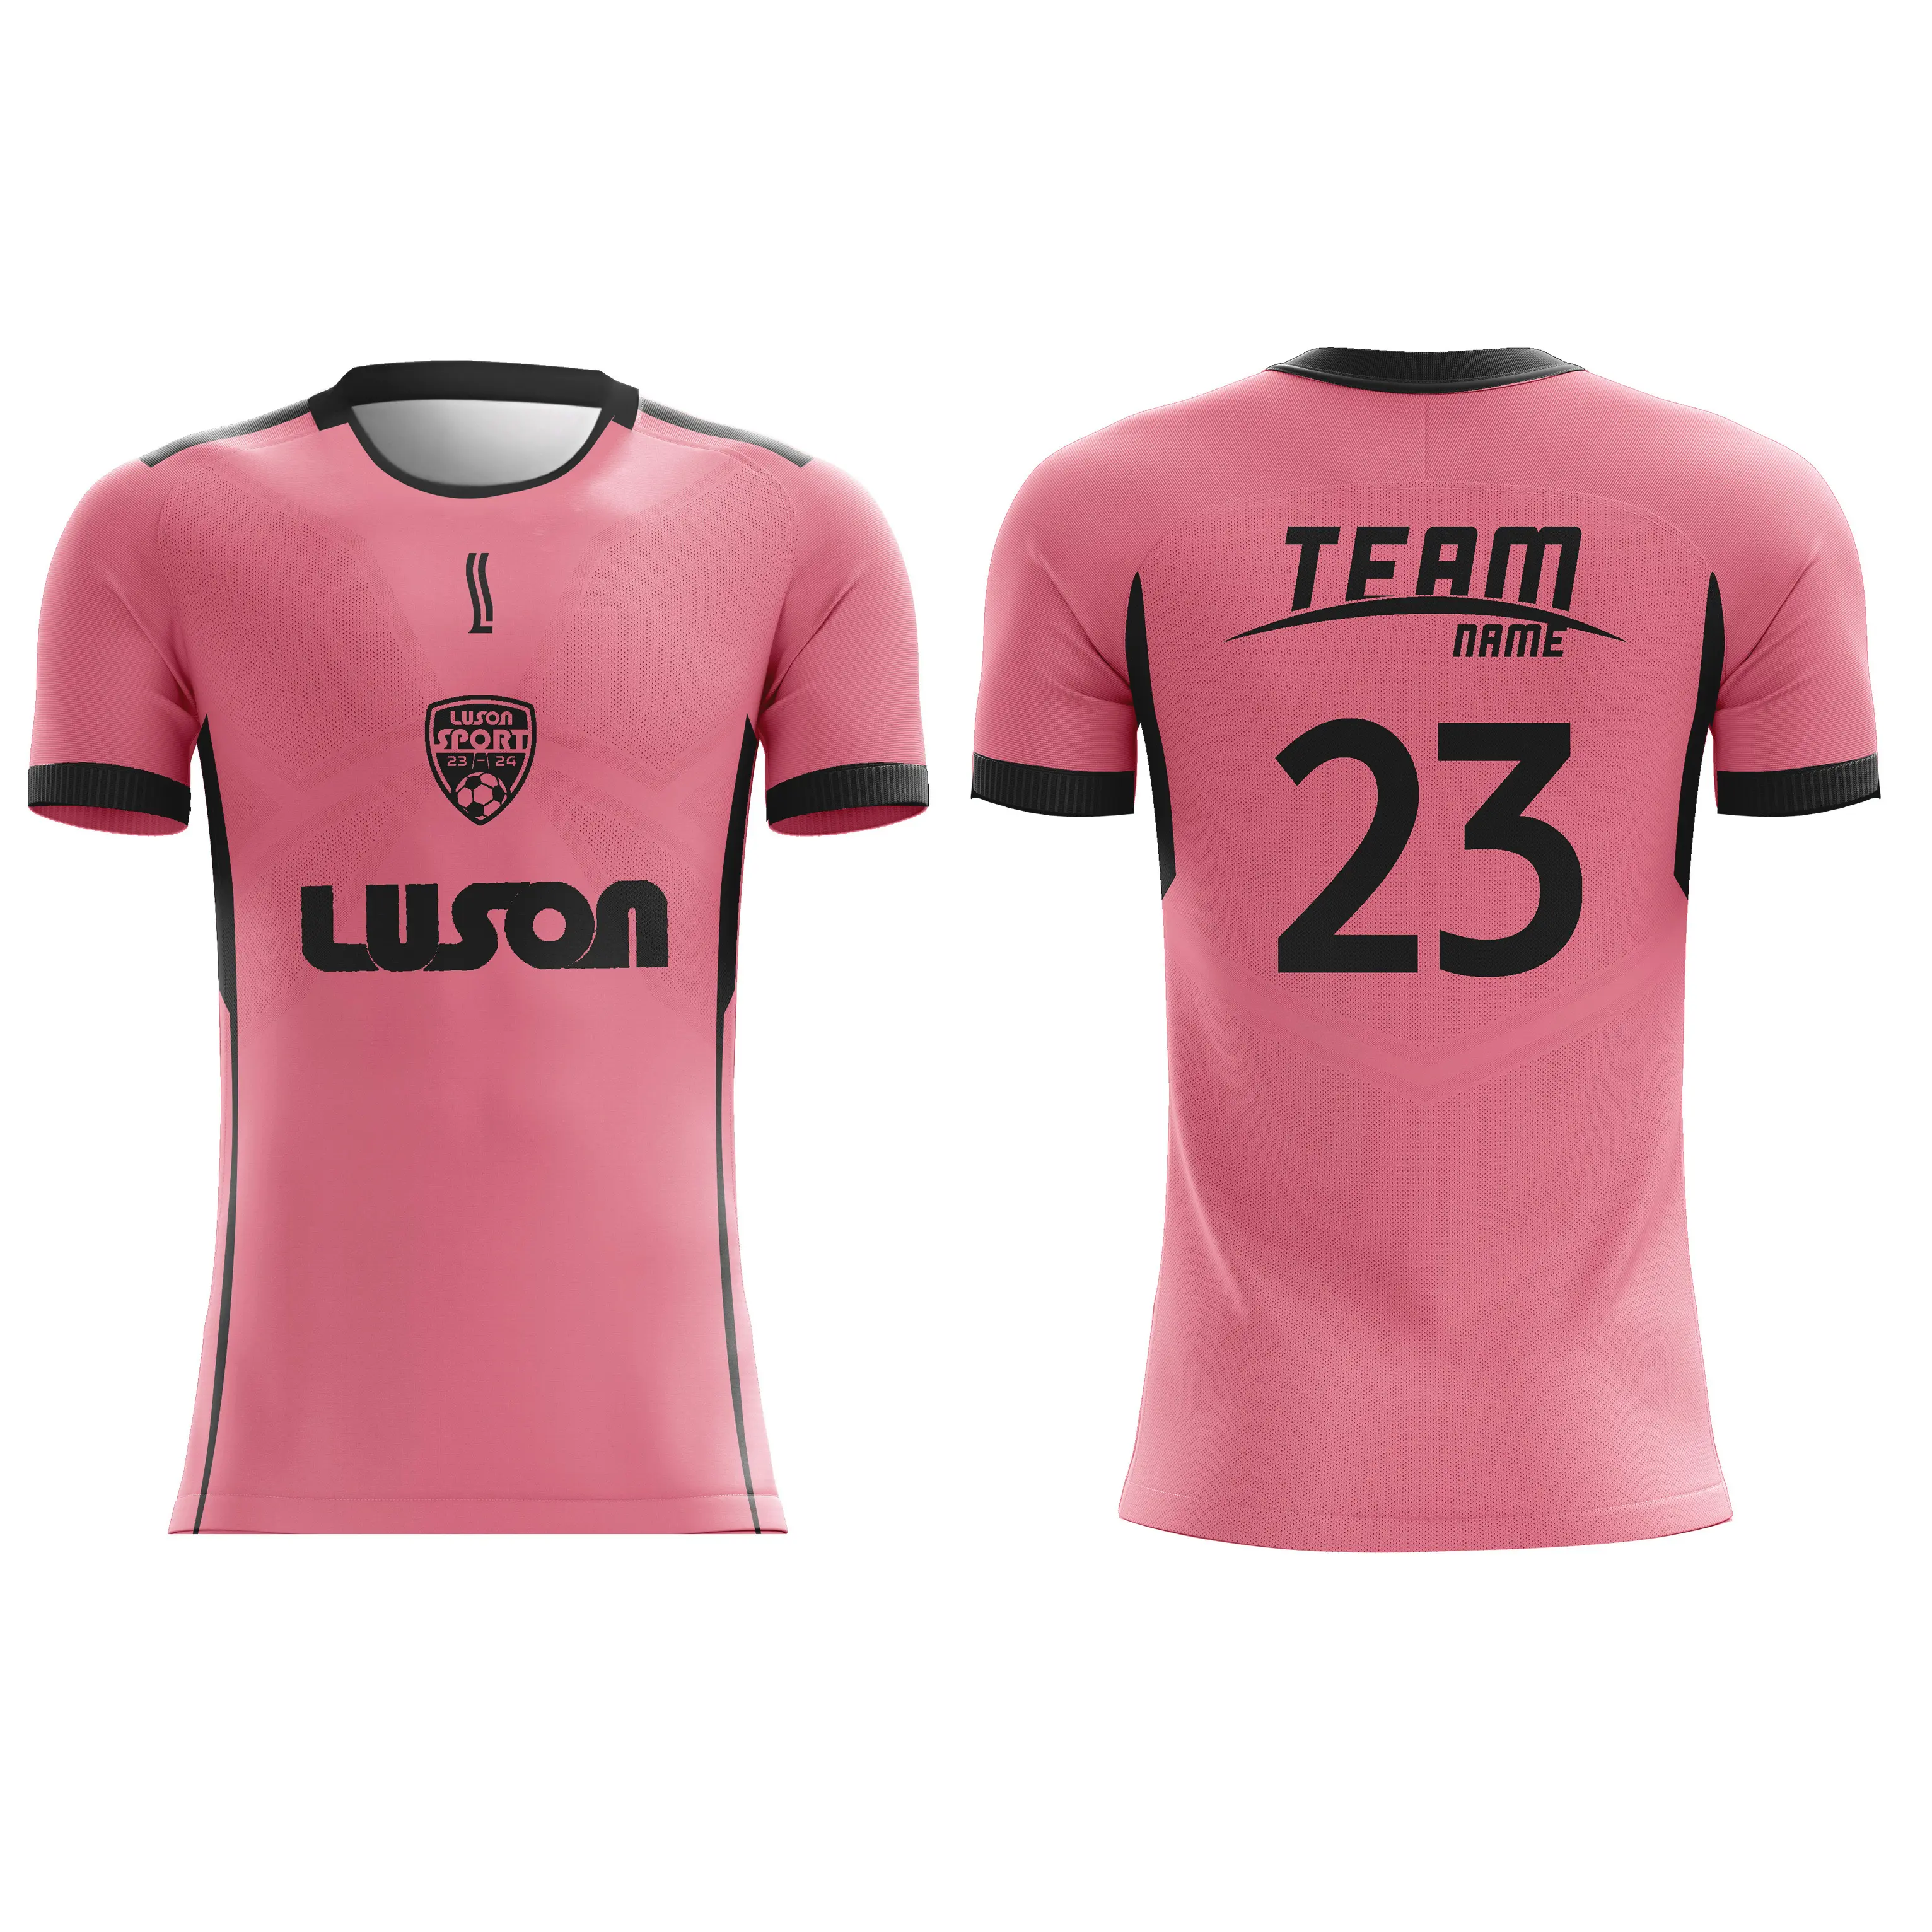 LUSON 24-25 New Design Soccer Jersey Set Soccer Team Mens Custom Logo Soccer Uniforms Jerseys Football Shirt